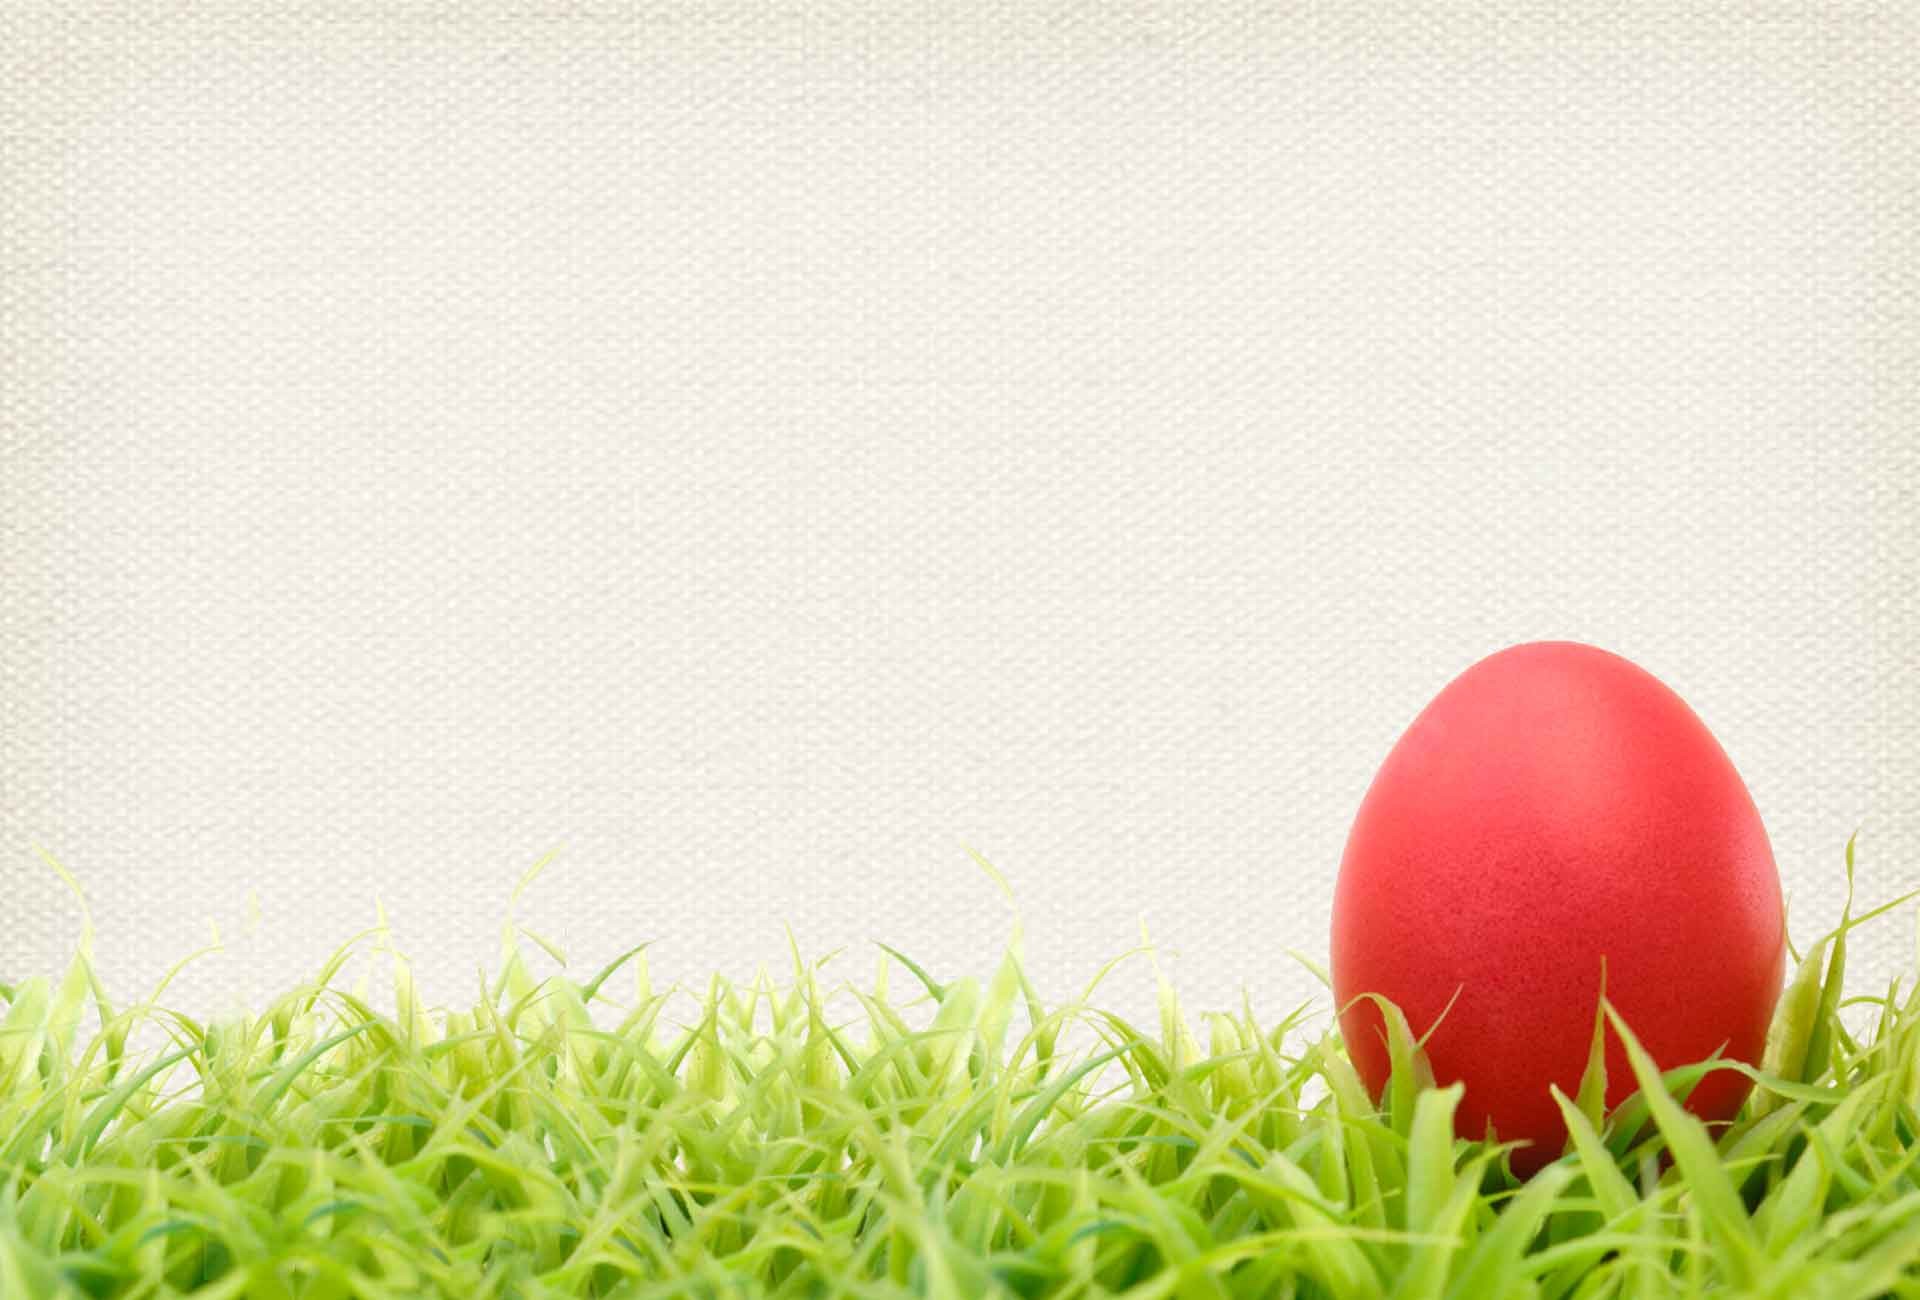 egg wallpaper,grass,easter egg,egg,lacrosse ball,ball